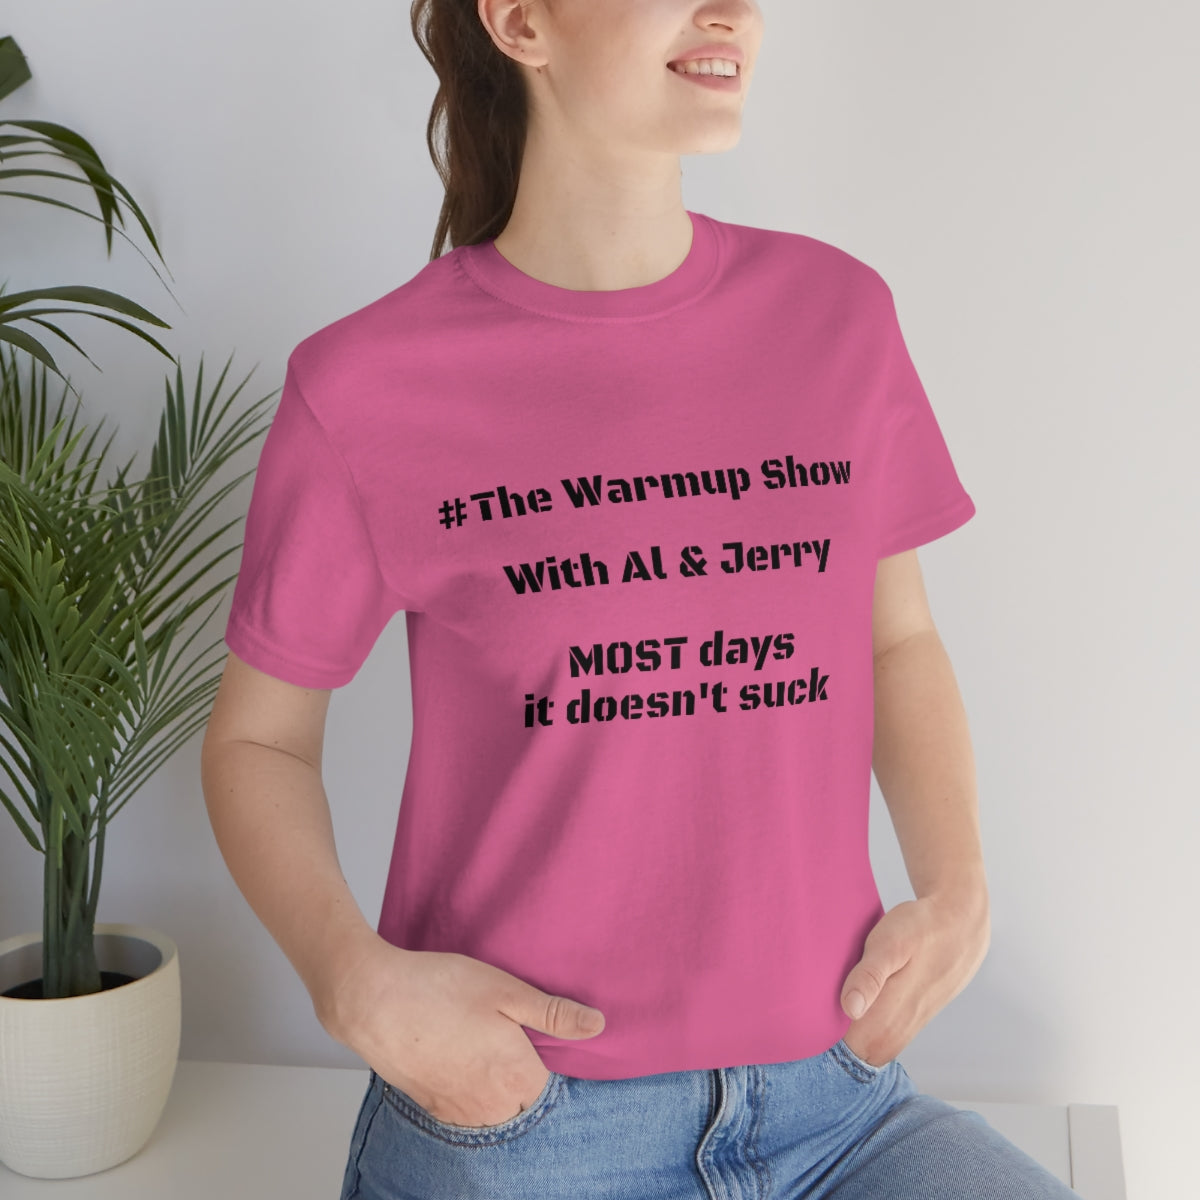 Al & Jerry "Warmup Show" Short Sleeve Tee